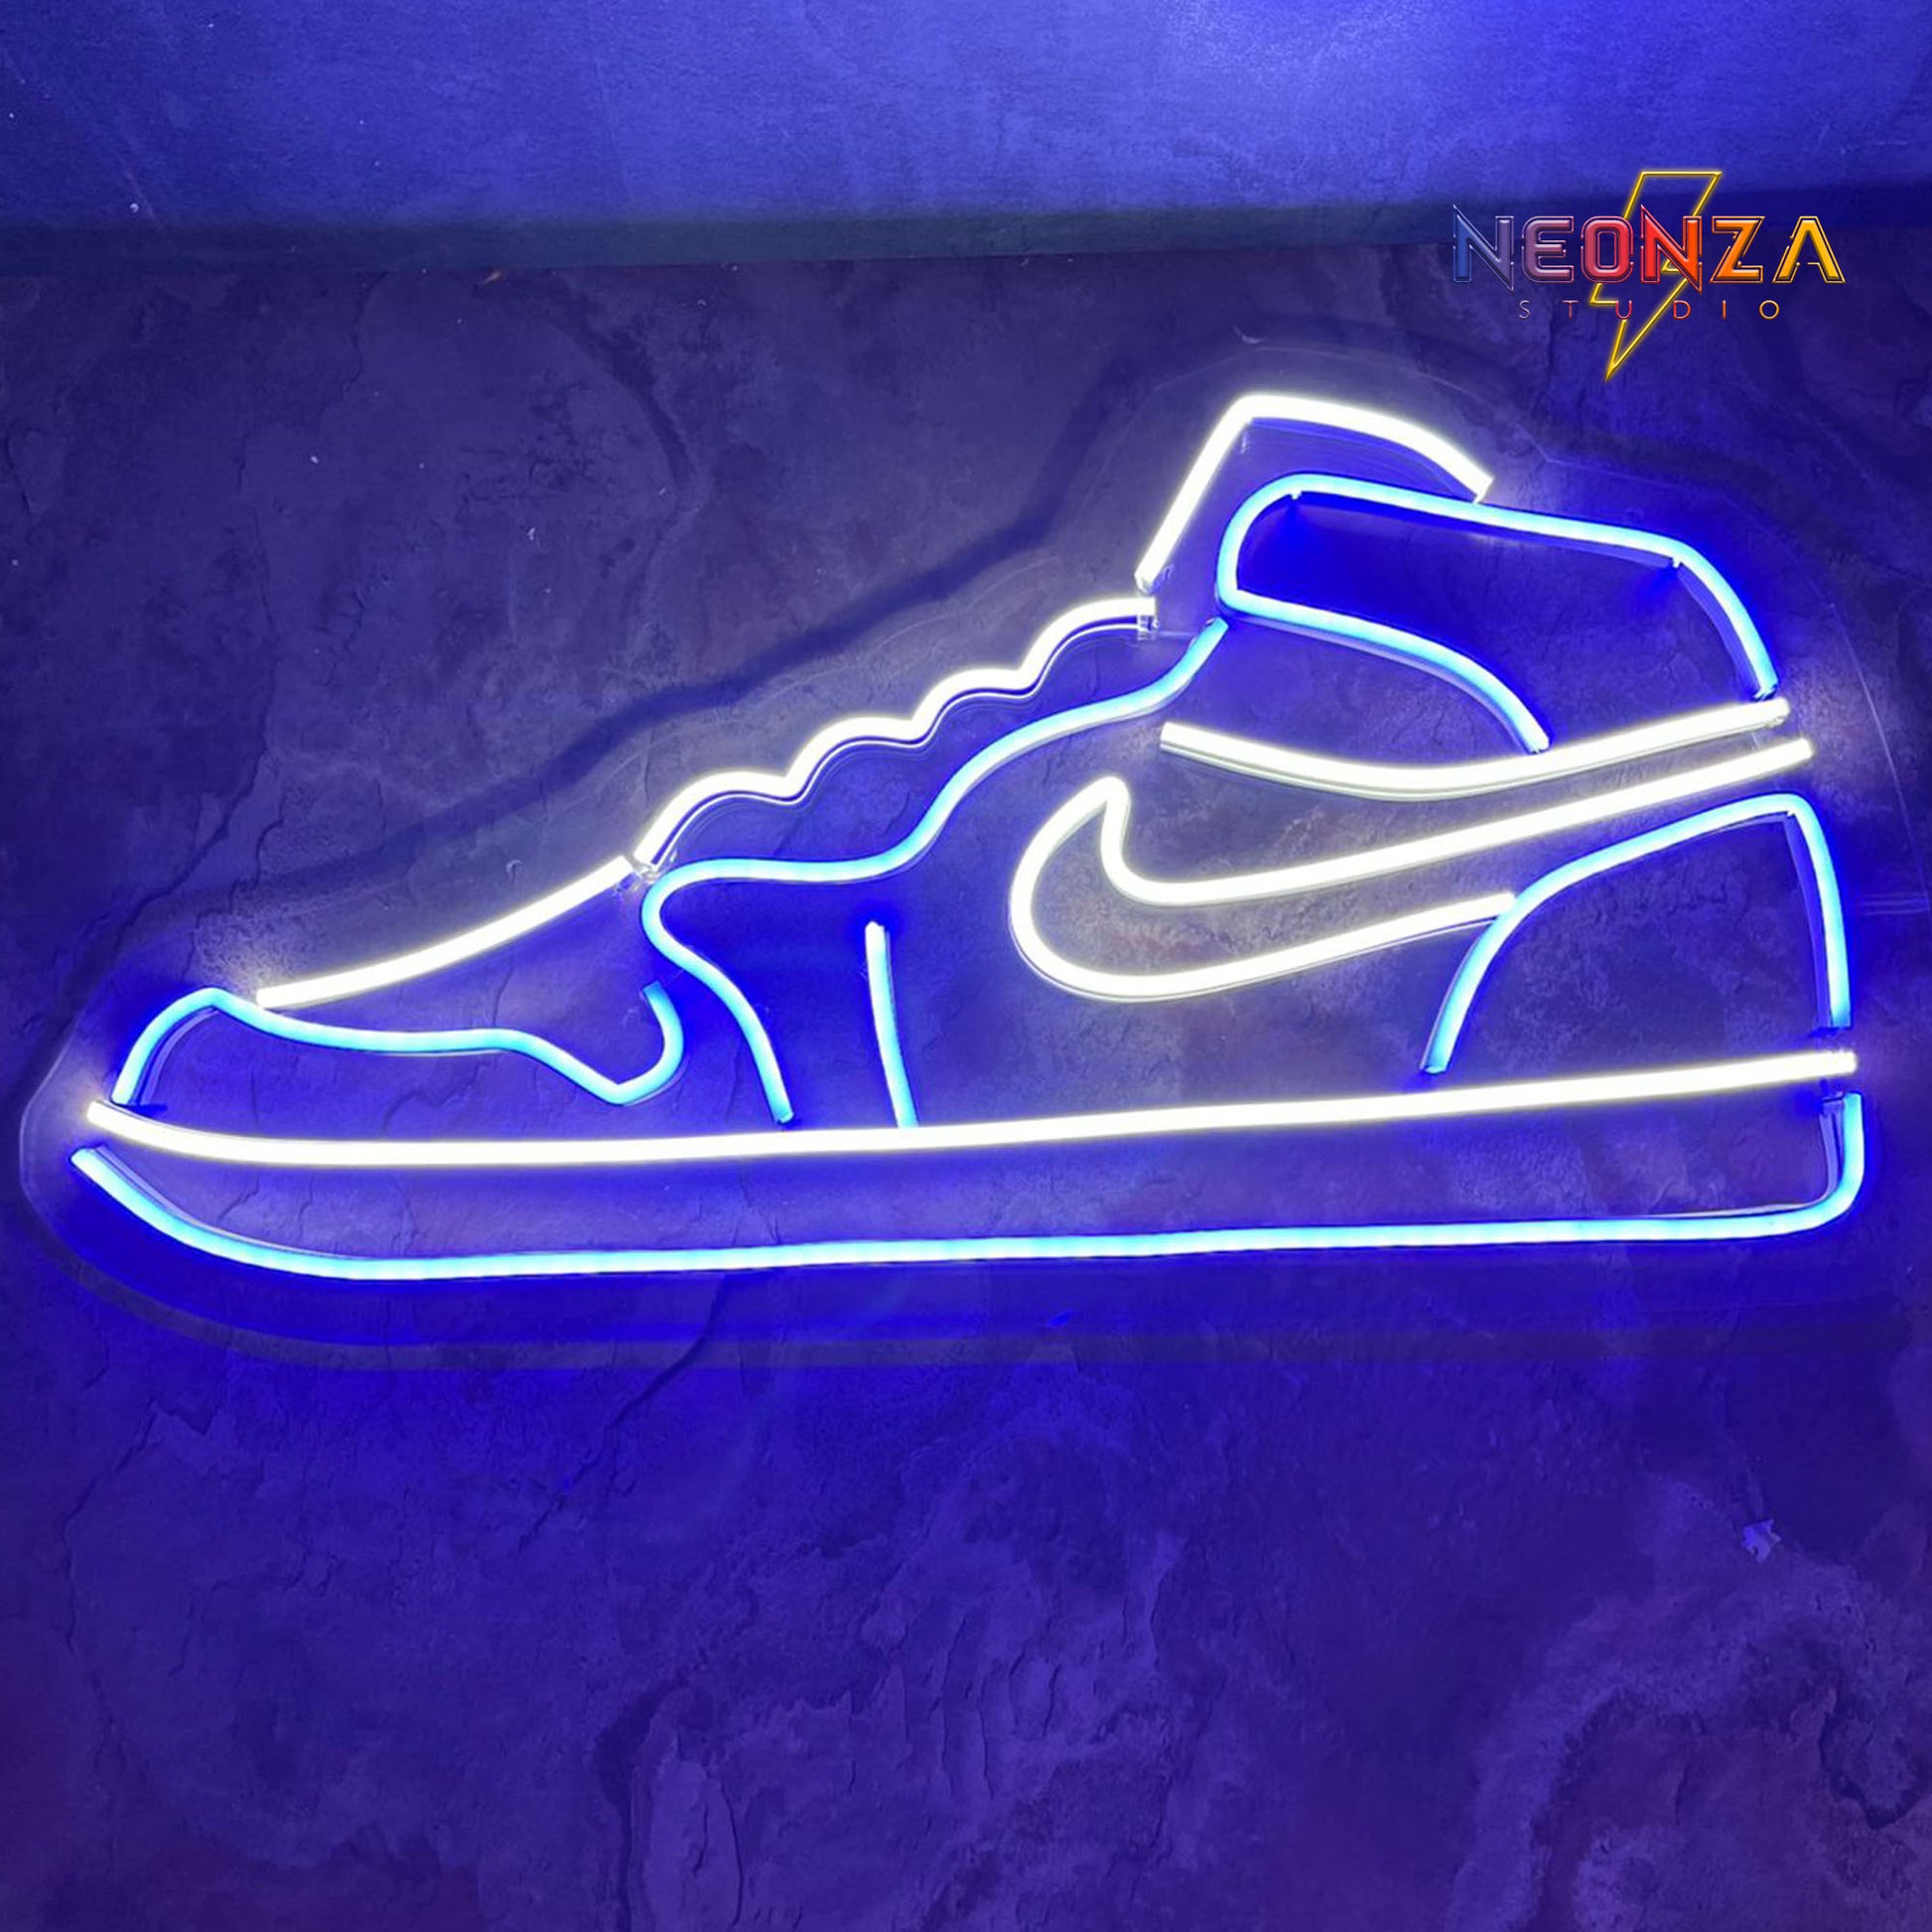 Nike jordan Neon Sign - Neonzastudio